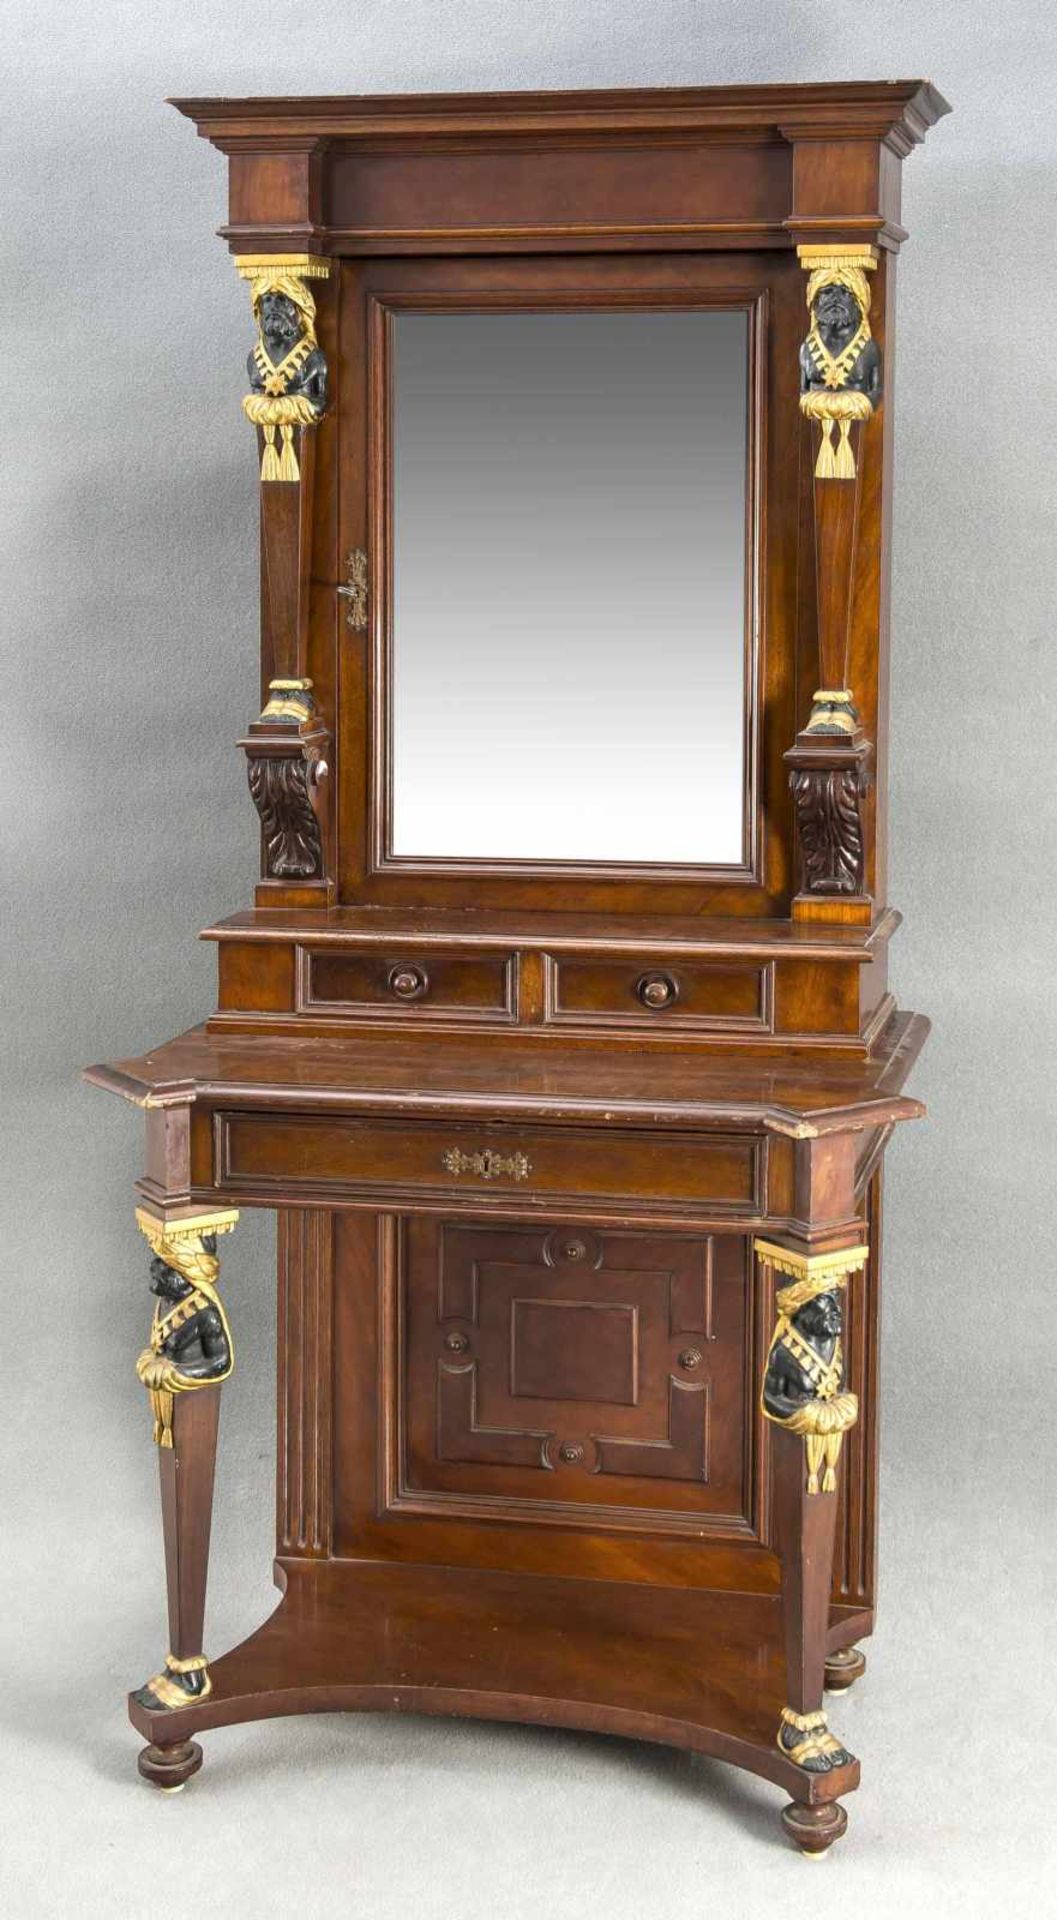 Dekorative Gründerzeit-Konsole mit Spiegeltür, um 1880, Mahagoni furniert/massiv, auf hohen Beinen